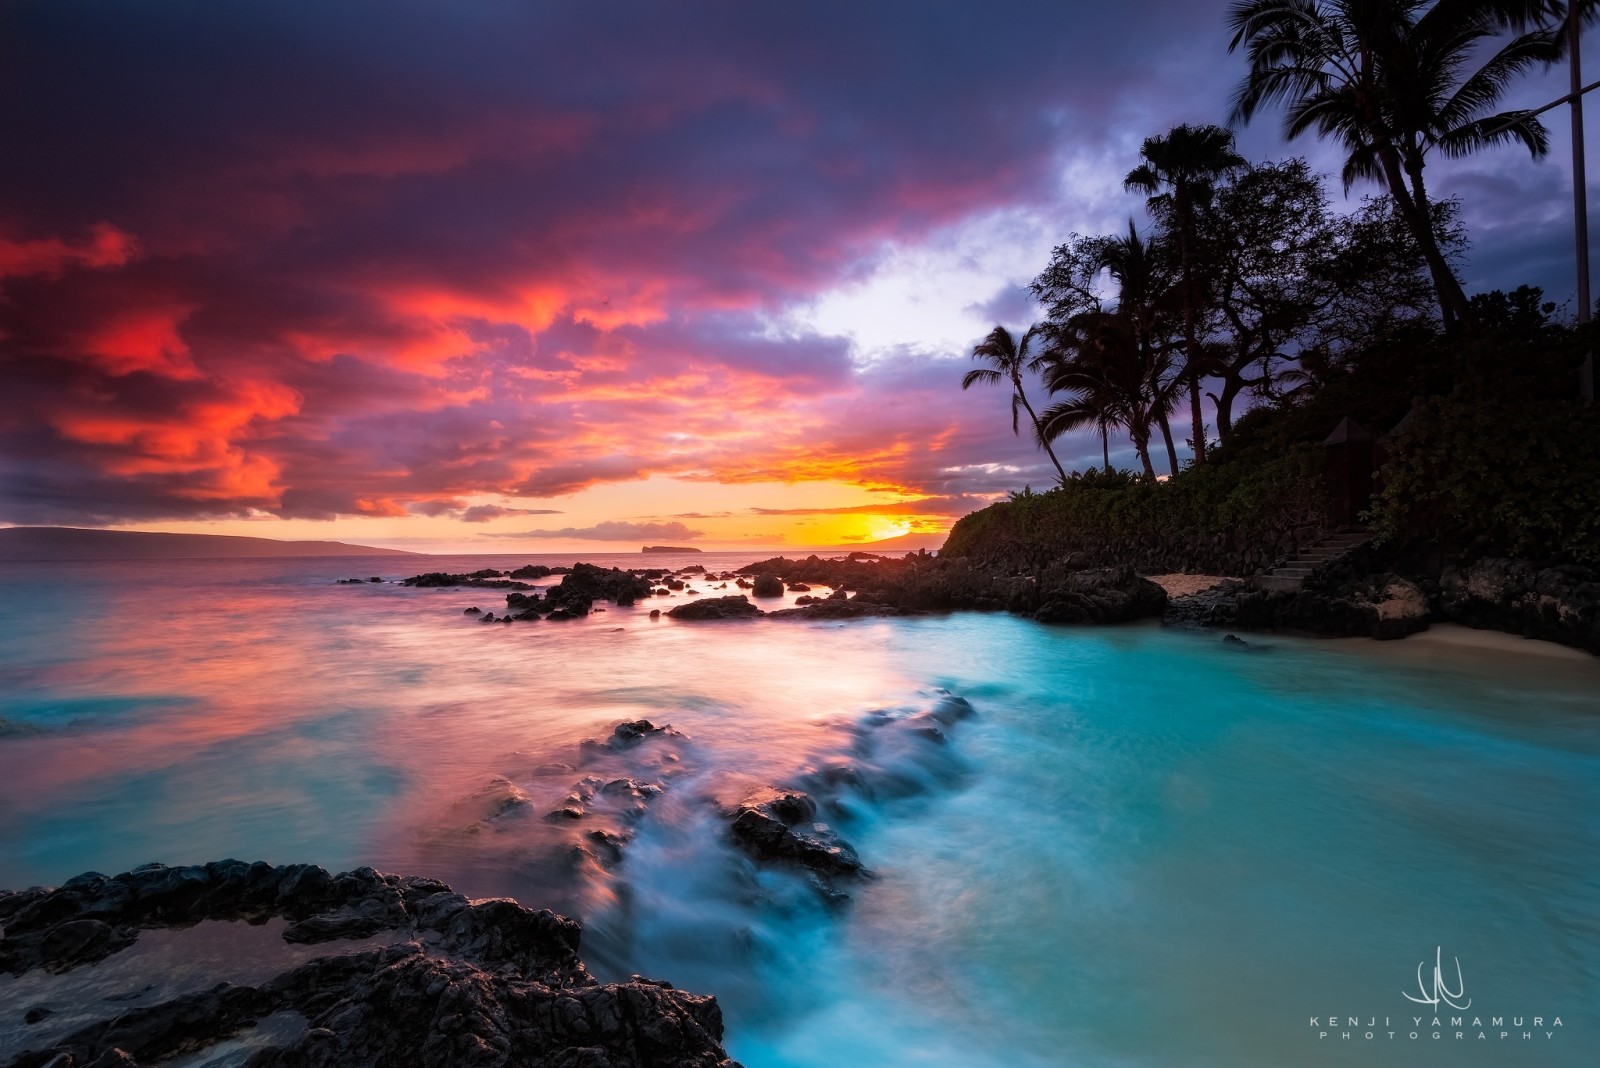 日落, 摄影家, 棕榈树, 山村健司, 夏威夷, 秘密海滩, 奥特罗夫毛伊岛